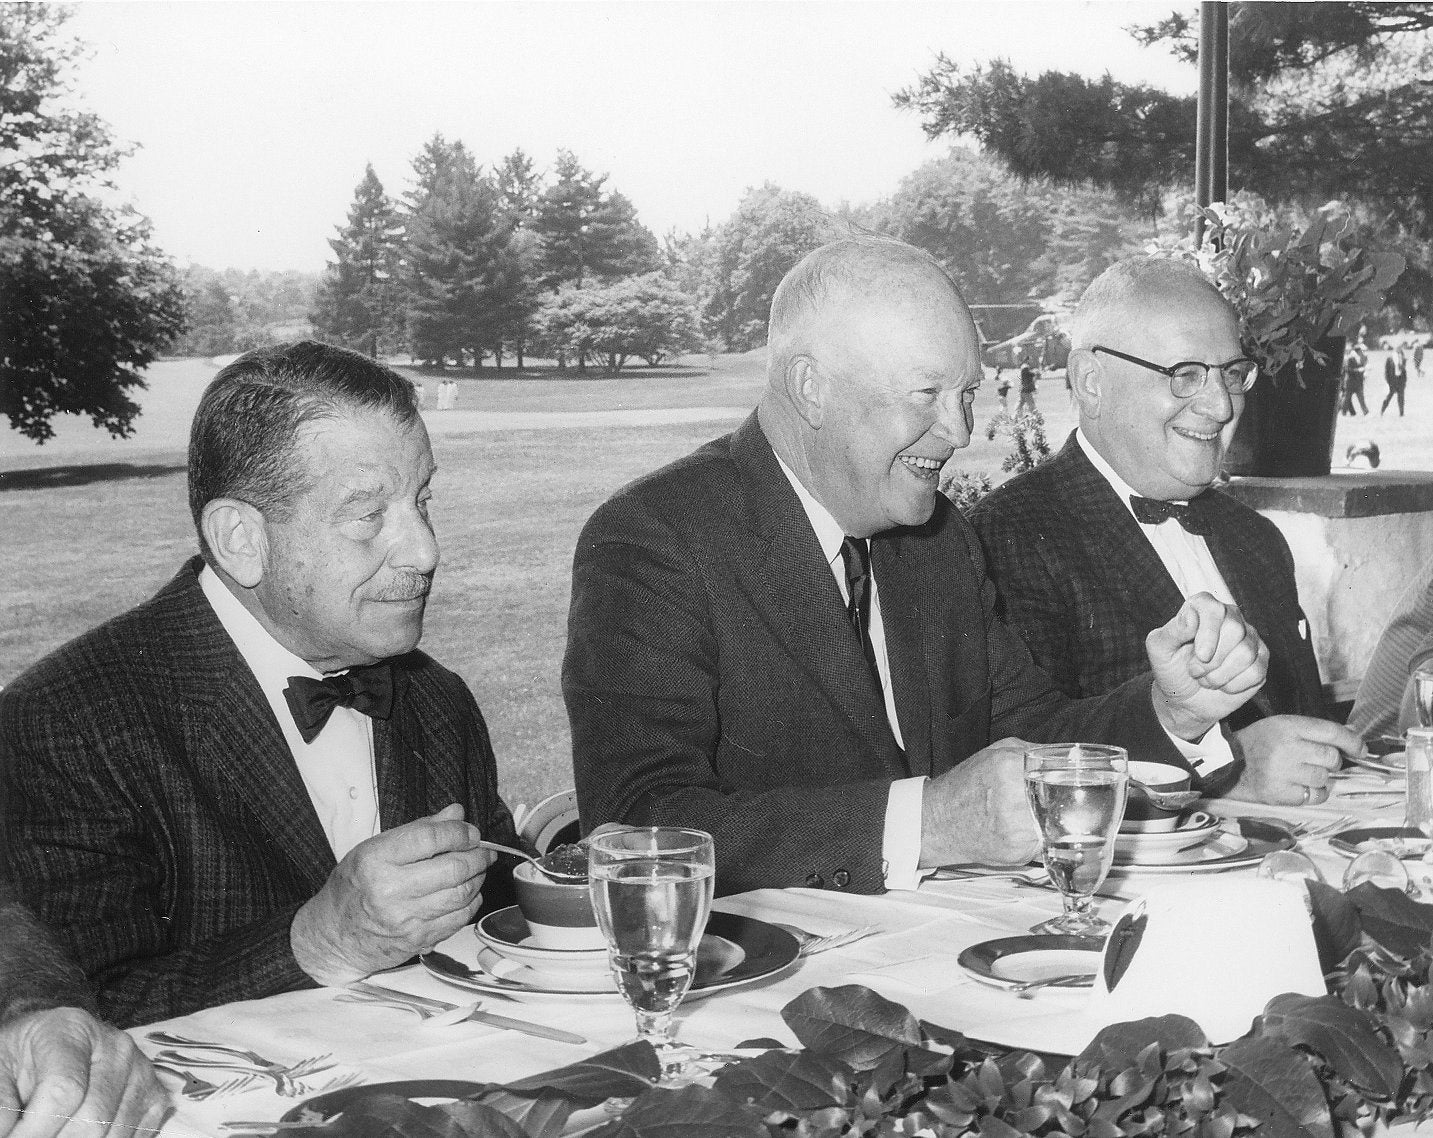 I.S. Ravdin, Dwight D. Eisenhower, and Leon J. Ohermayer, 1964